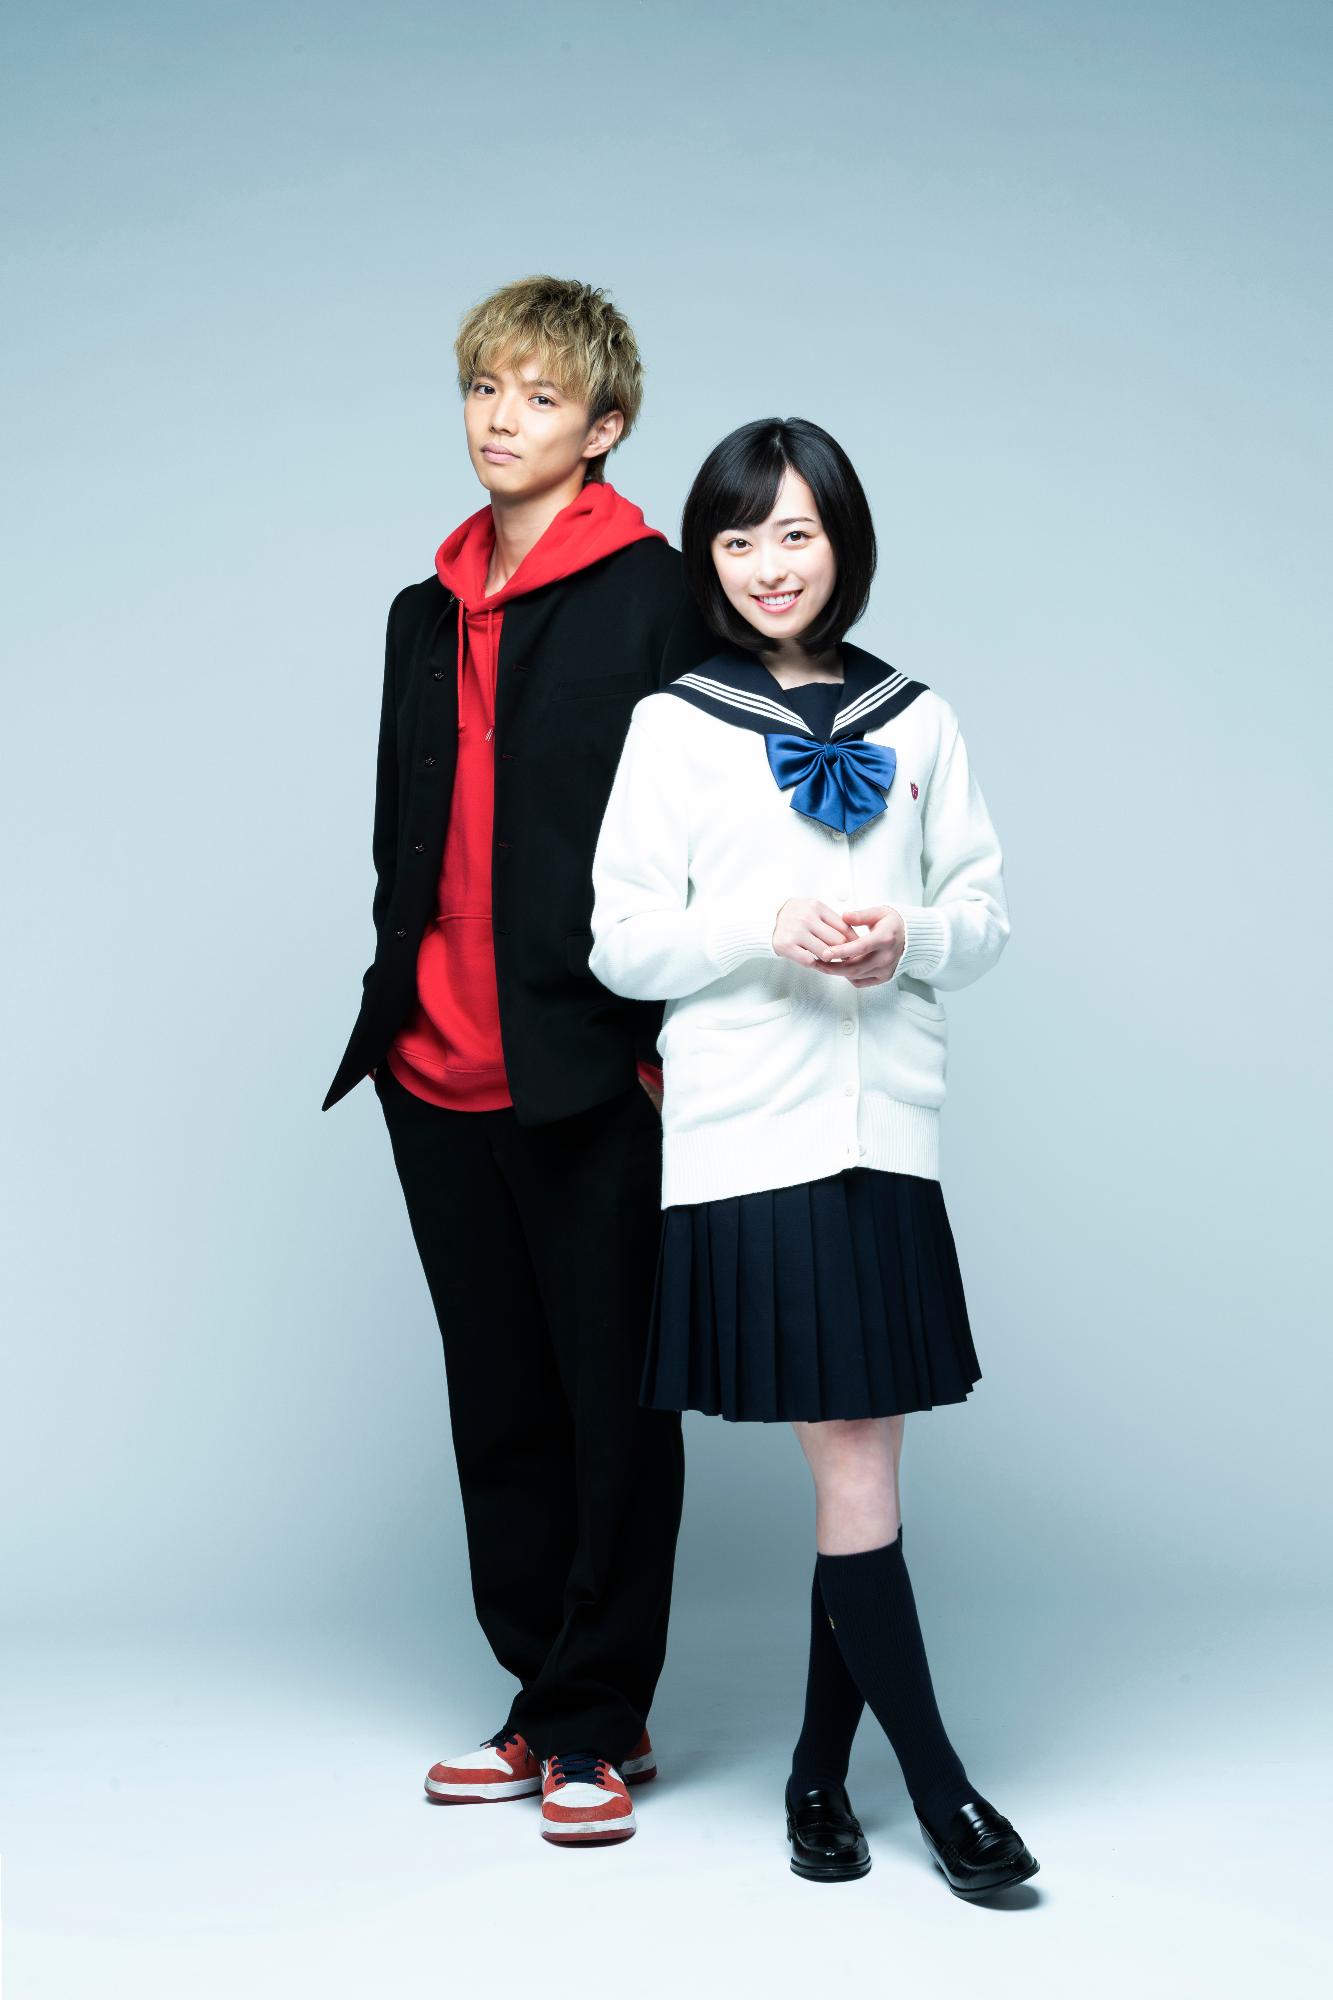 薄青色の背景を背にして、女子高校生と男子高校生に扮して並んでいる二人の演者の写真